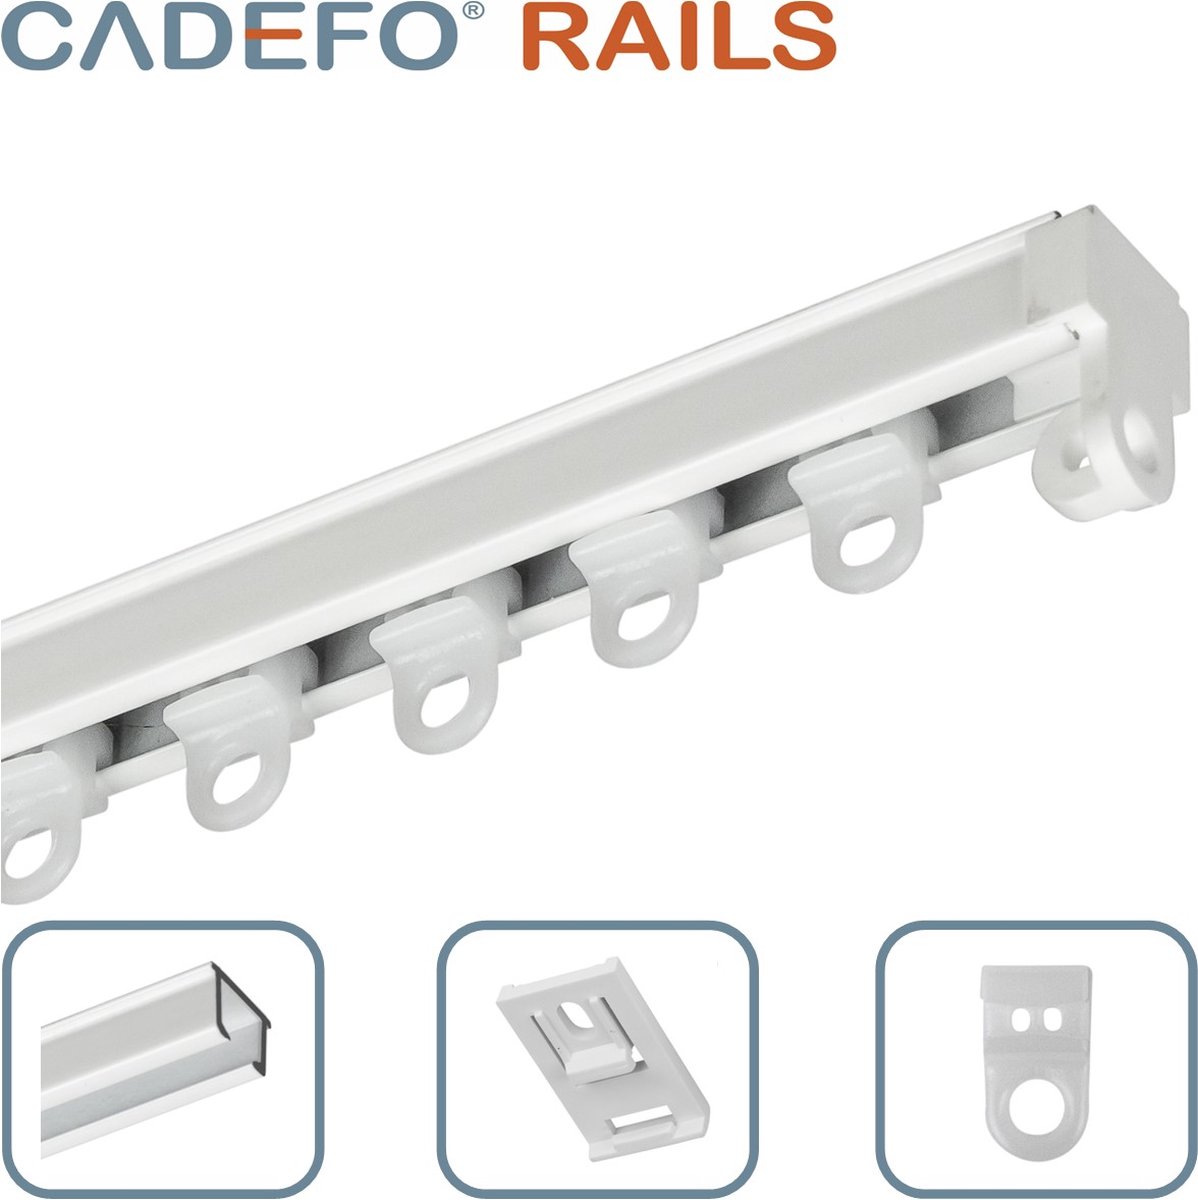 CADEFO RAILS (201 - 250 cm) Gordijnrails - Compleet op maat! - UIT 1 STUK - Leverbaar tot 6 meter - Plafondbevestiging - Lengte 236 cm